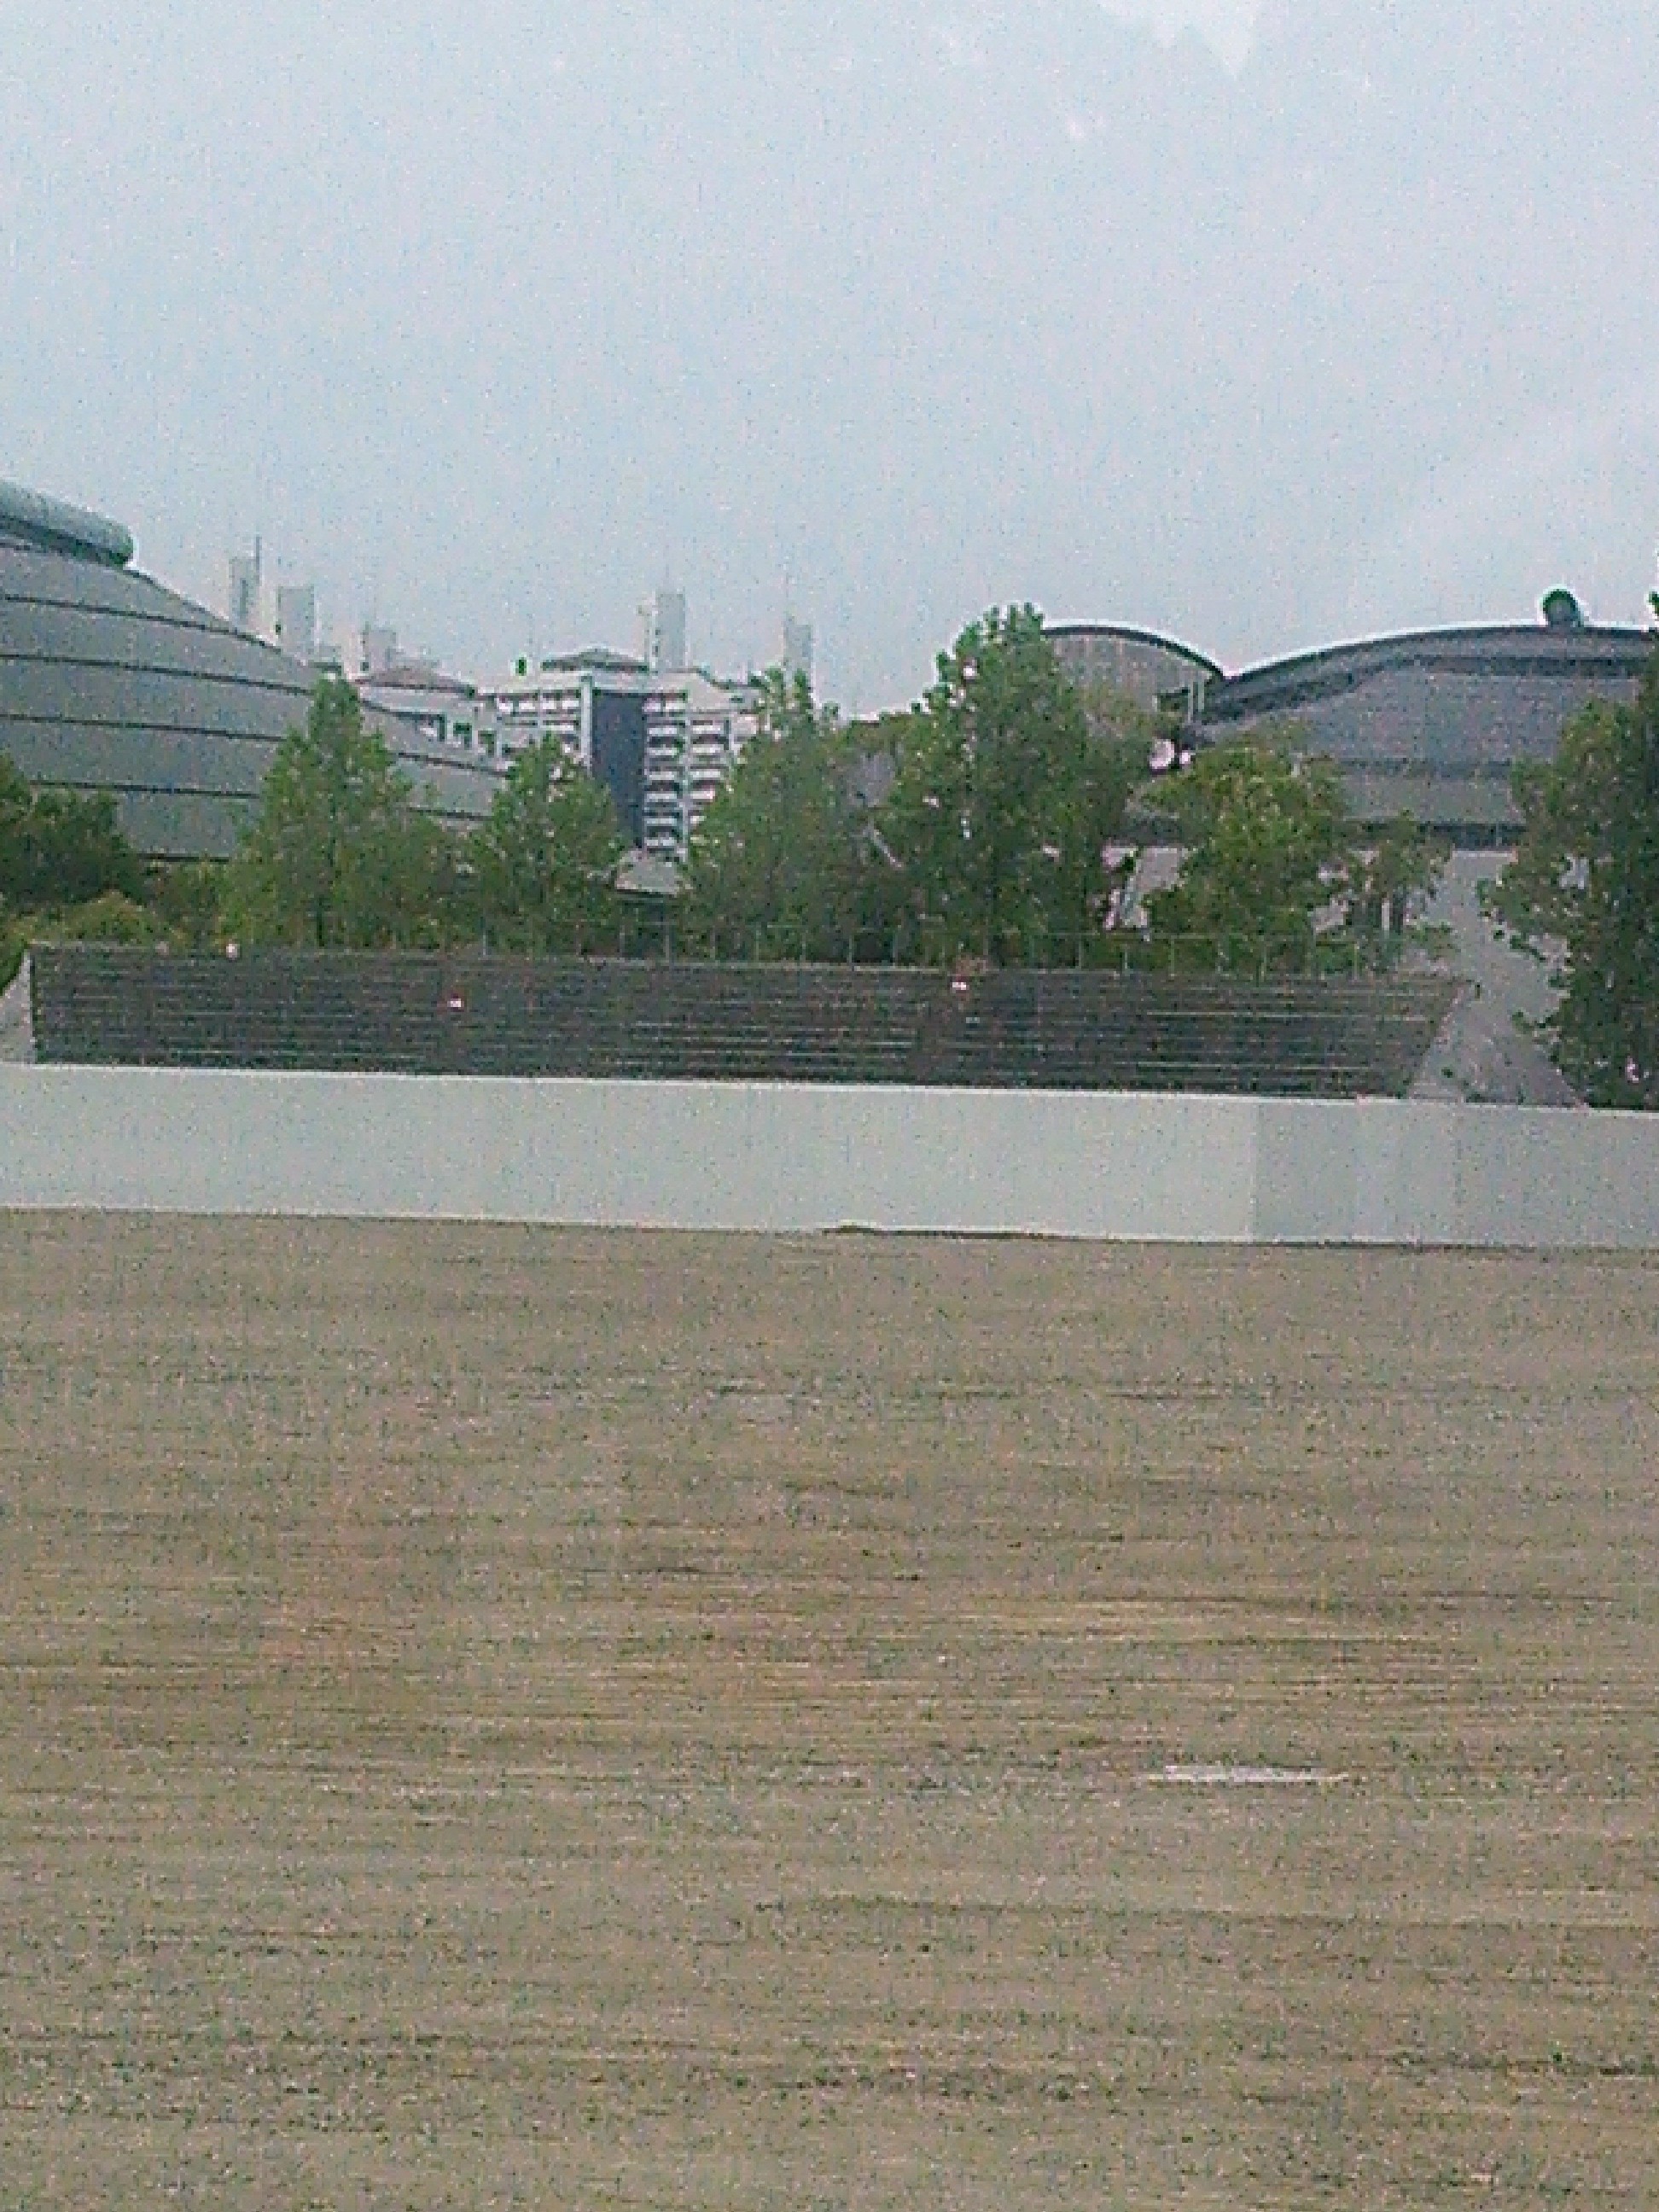 旧広島市民球場